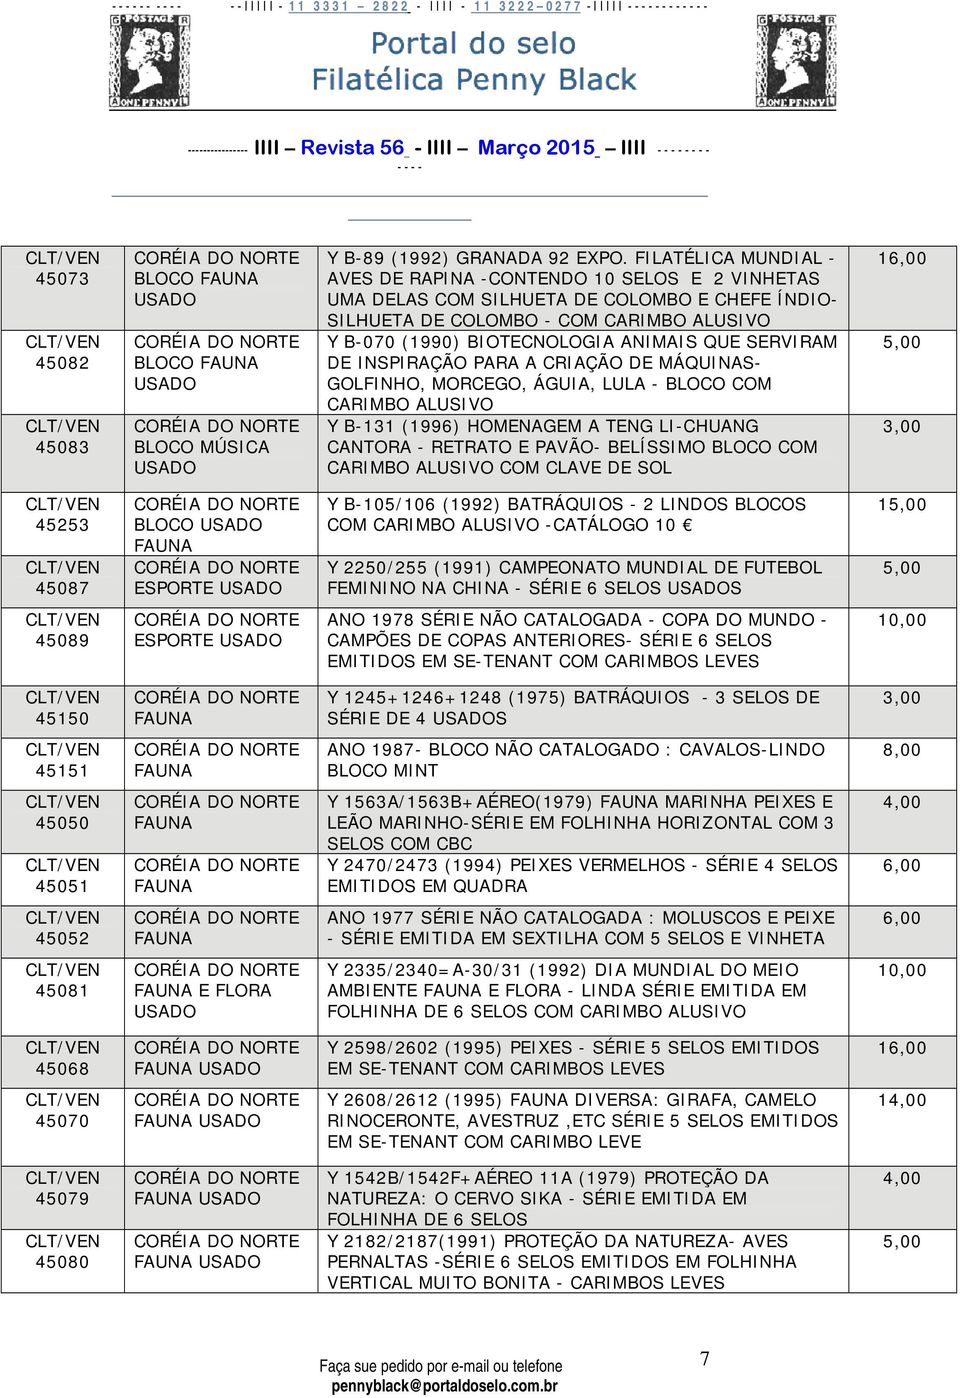 SERVIRAM DE INSPIRAÇÃO PARA A CRIAÇÃO DE MÁQUINAS- GOLFINHO, MORCEGO, ÁGUIA, LULA - BLOCO COM CARIMBO ALUSIVO Y B-131 (1996) HOMENAGEM A TENG LI-CHUANG CANTORA - RETRATO E PAVÃO- BELÍSSIMO BLOCO COM